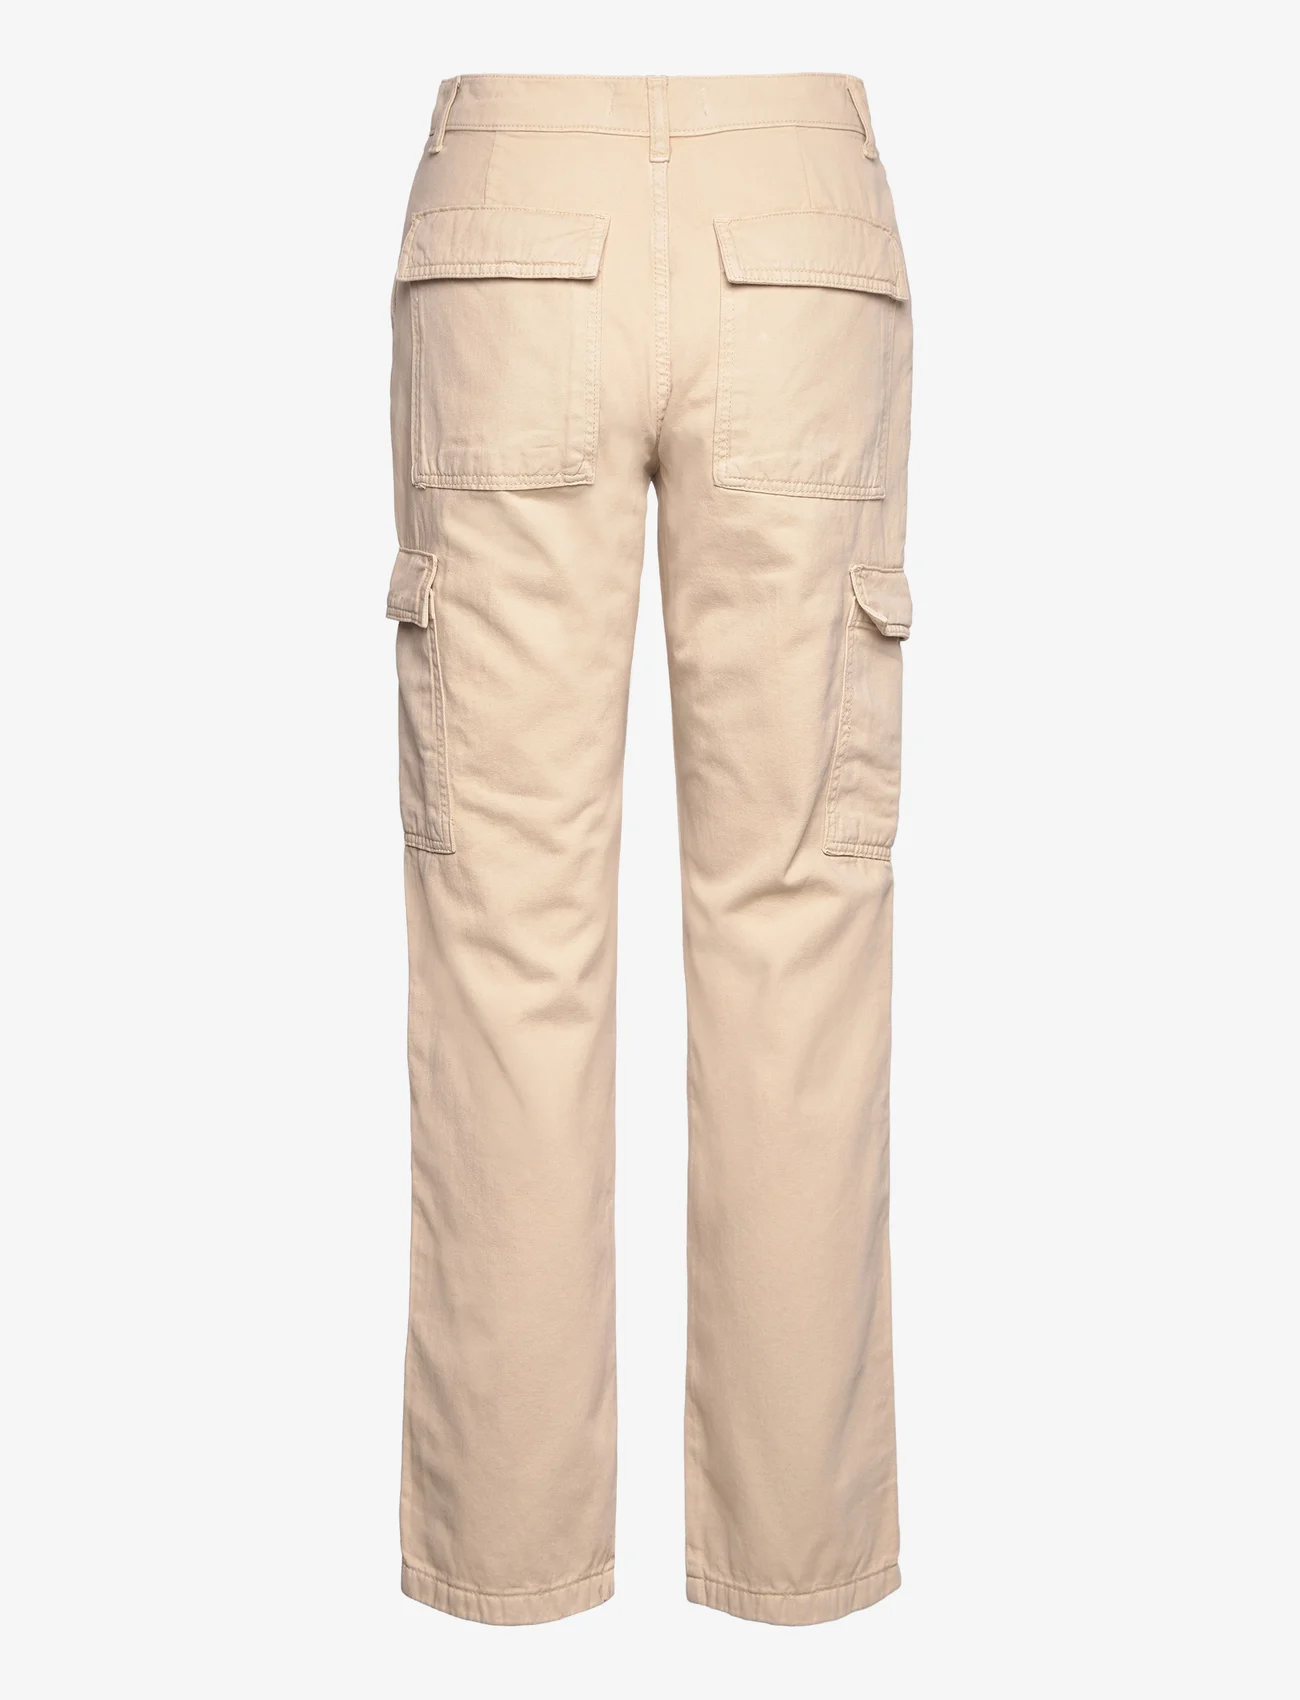 Mango - Pocket cargo jeans - laveste priser - light beige - 1